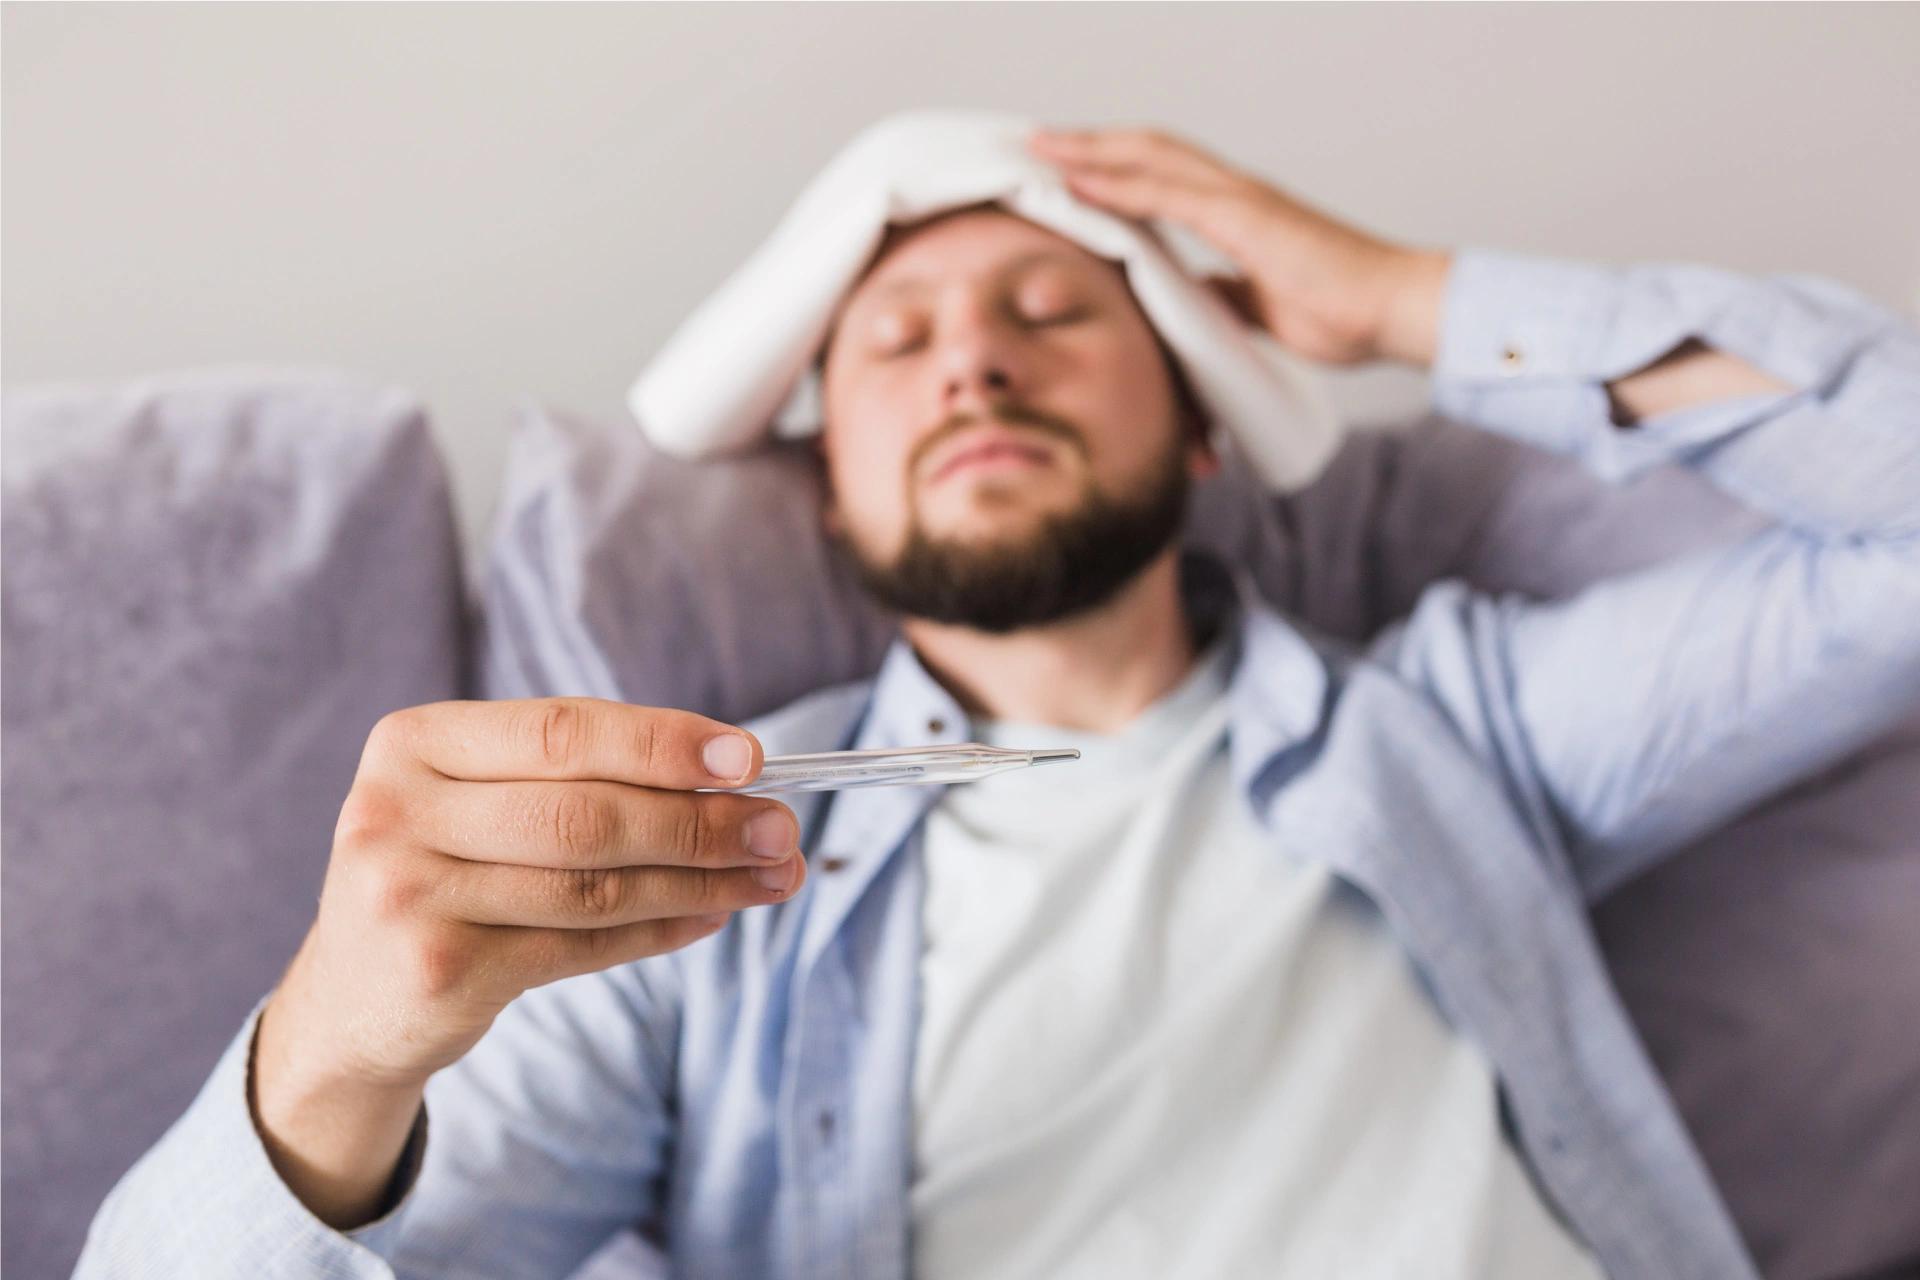 टाइफाइड बुखार: इसके बारे में 6 महत्वपूर्ण बातें जो आपको अवश्य जाननी चाहिए